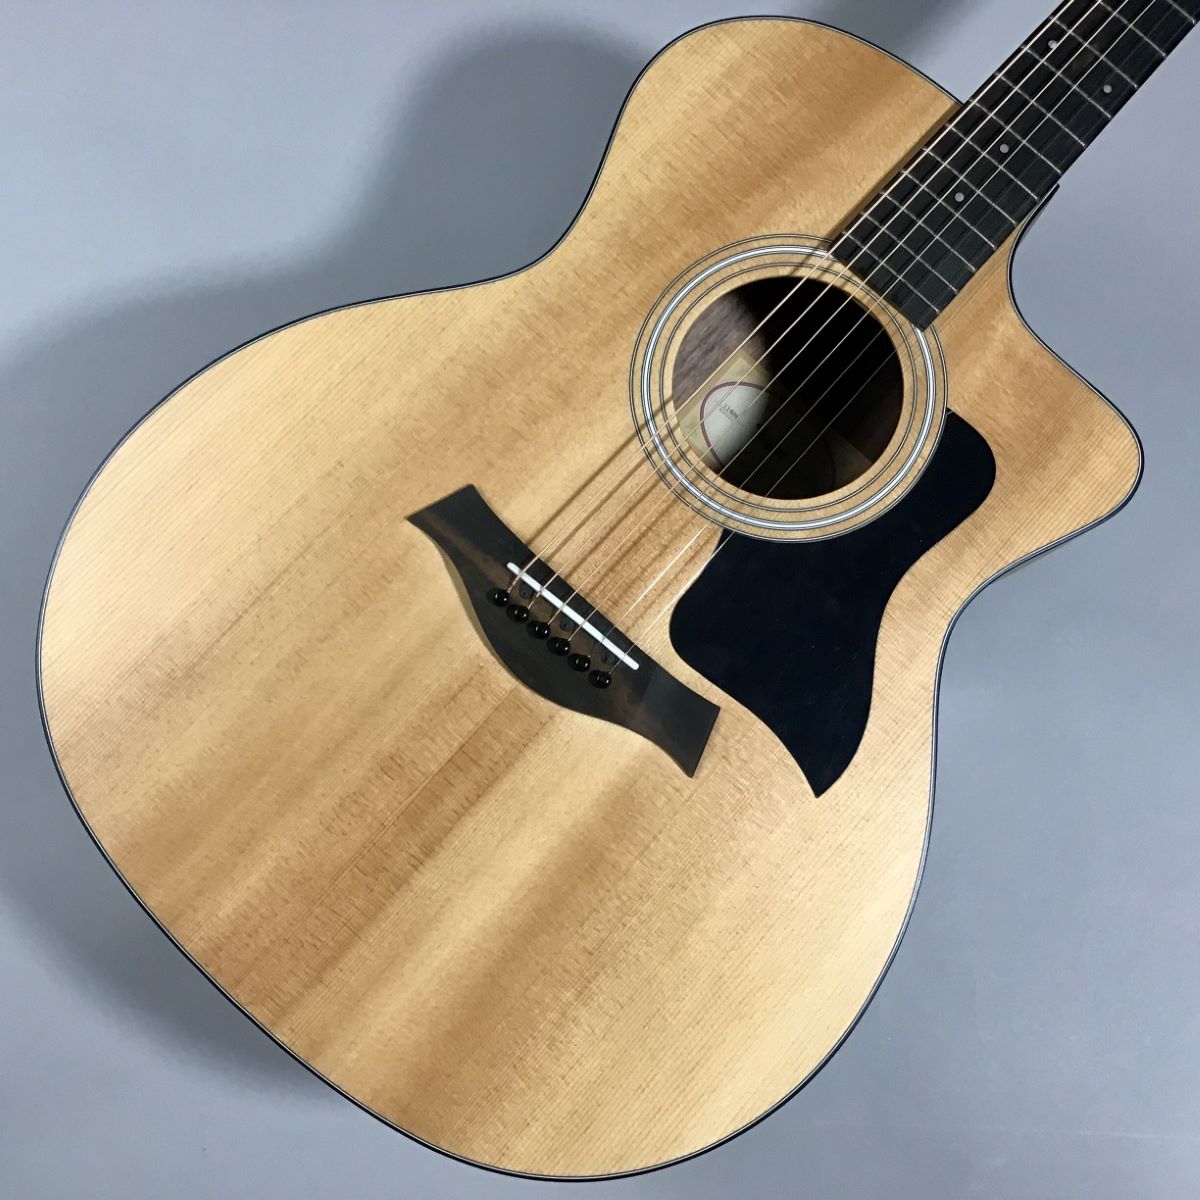 Taylor 114e アコギ アコースティックギター エレアコ材質トップ板 